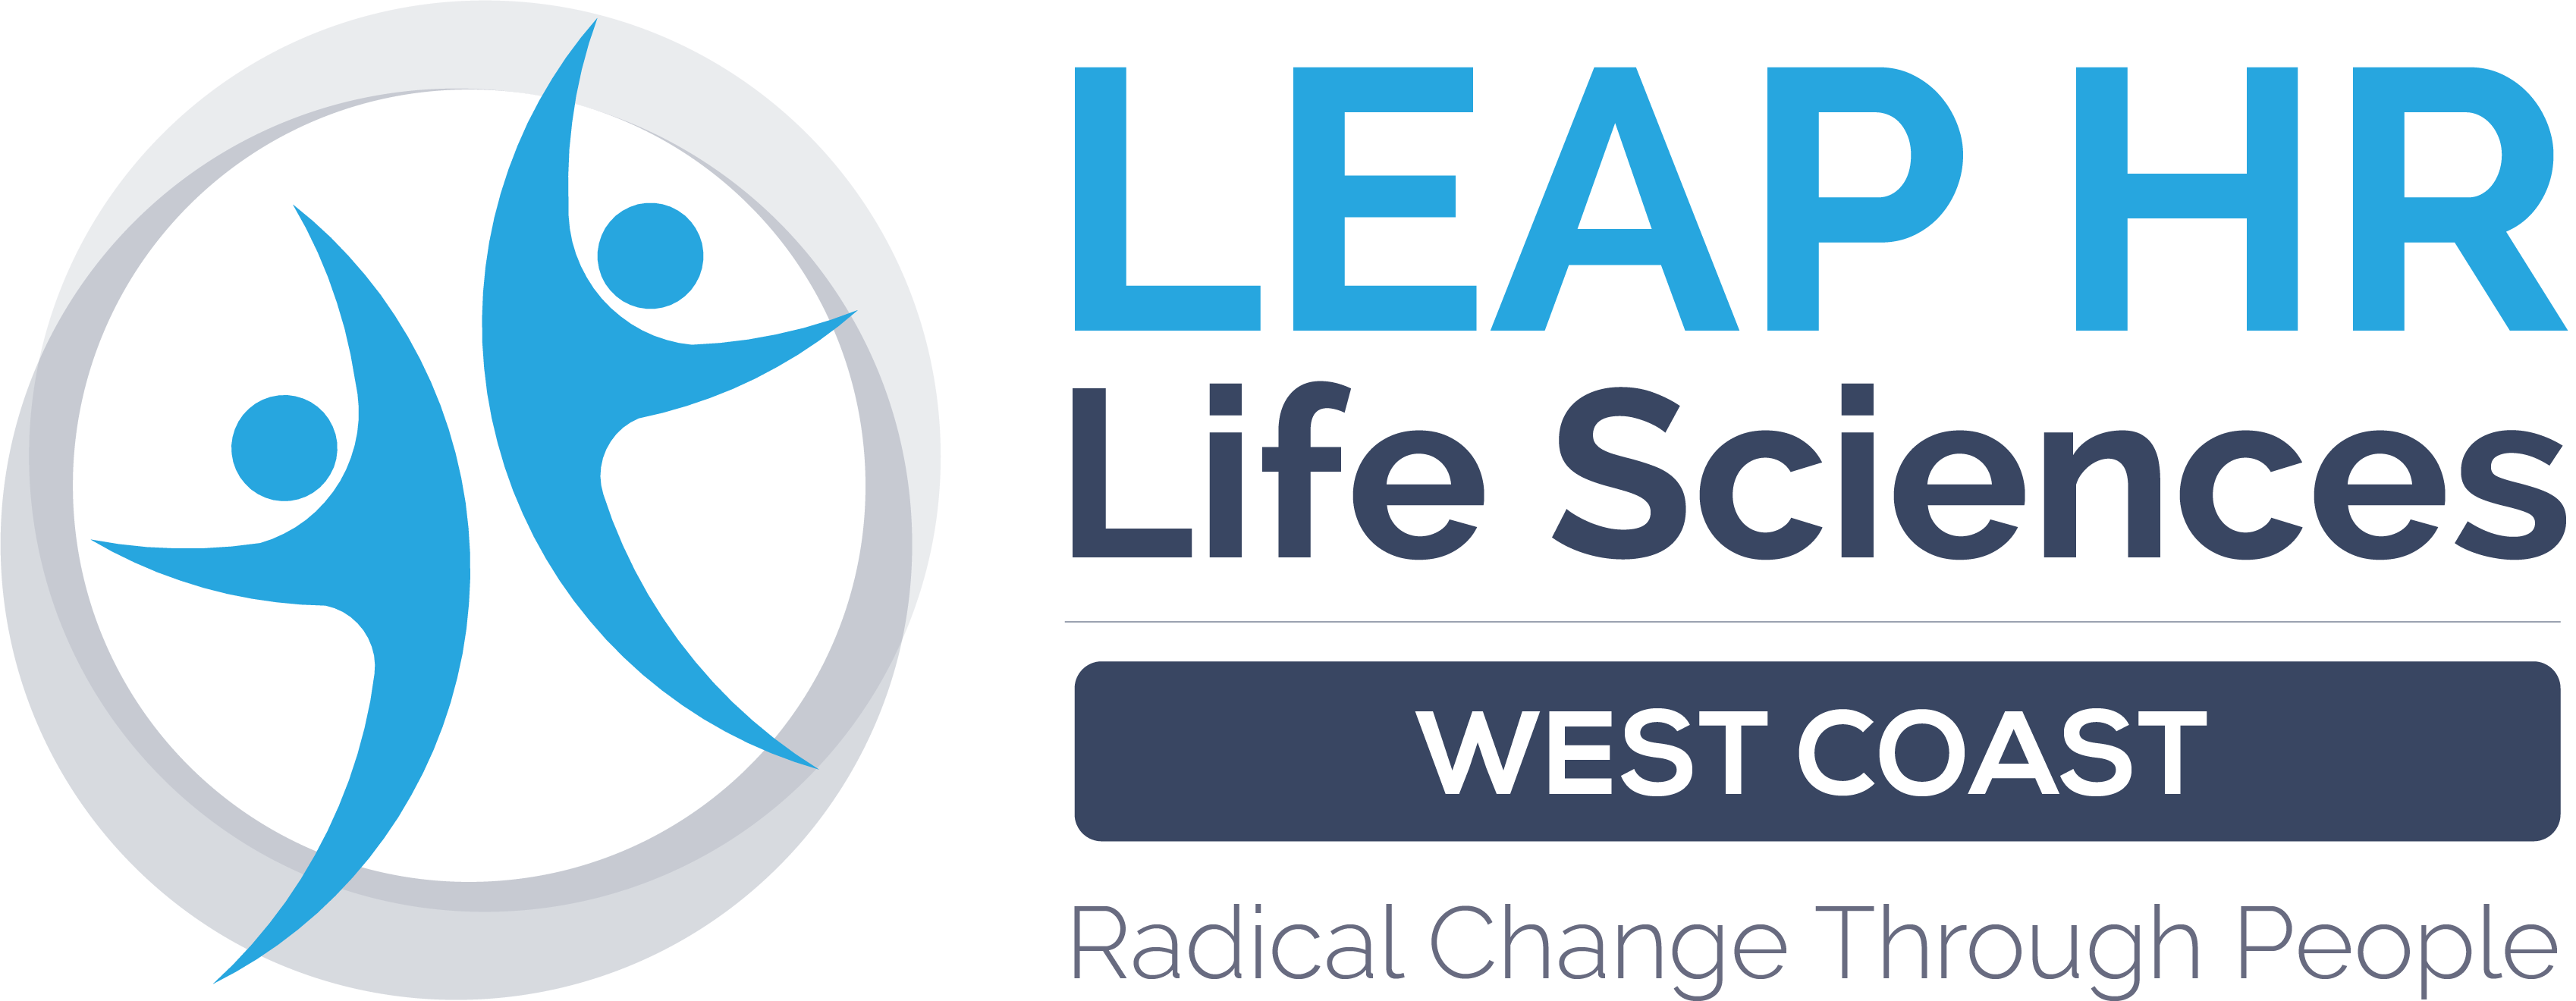 LEAP Life Sciences West Logo